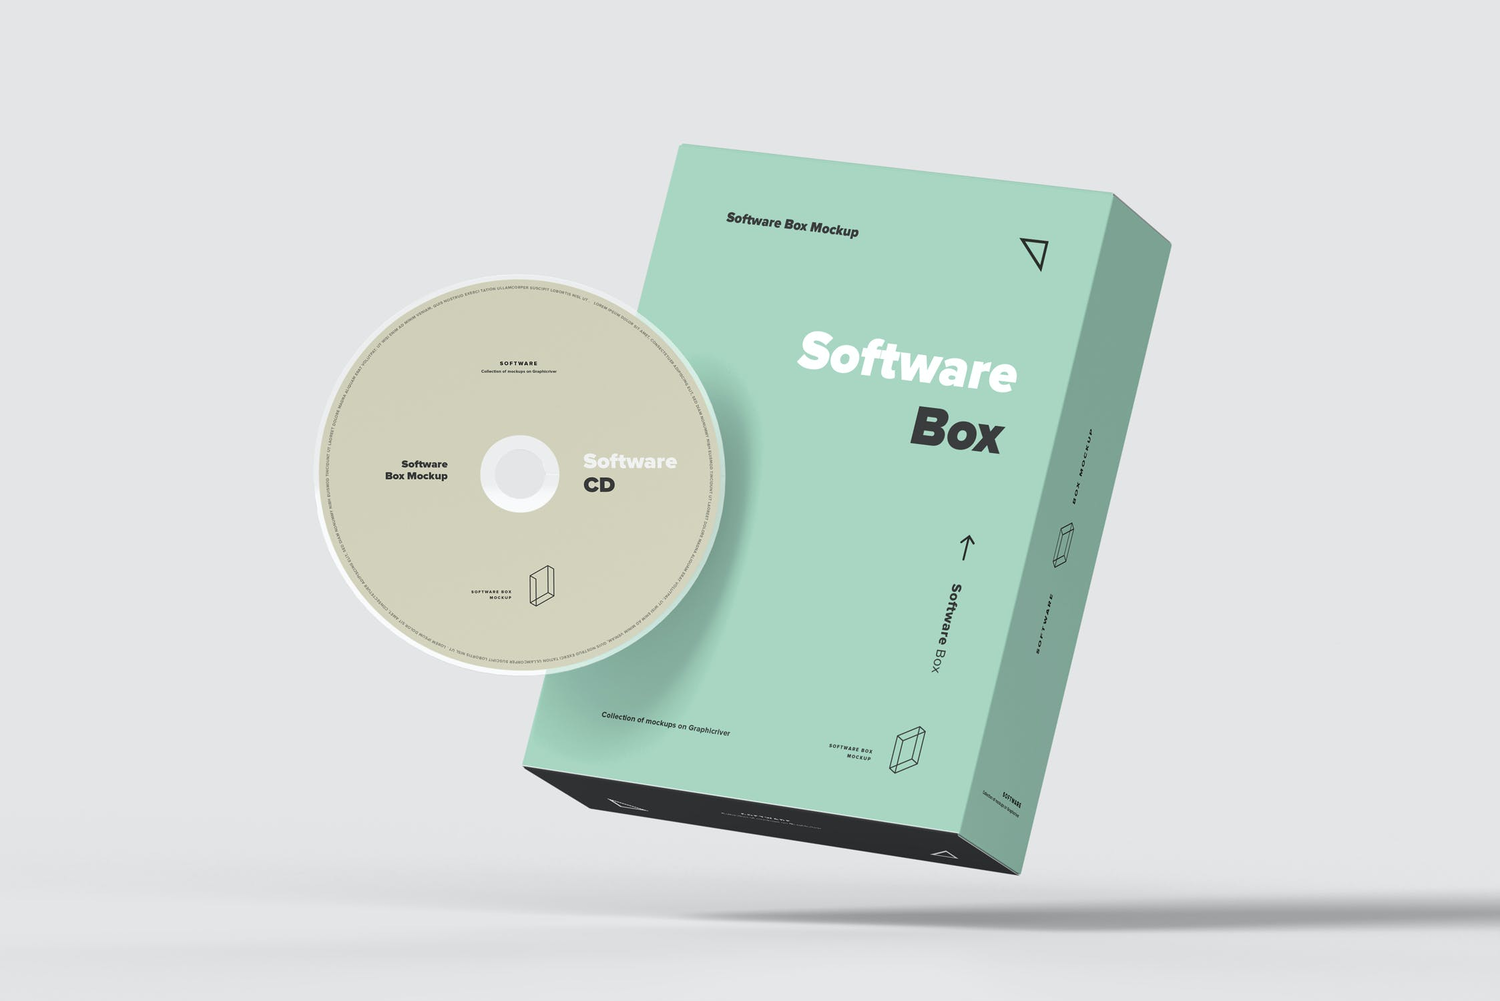 4762 企业办公软件纸盒包装盒cd光盘光碟设计vi贴图ps样机素材psd模板 Software Box Mock-up 2@GOOODME.COM